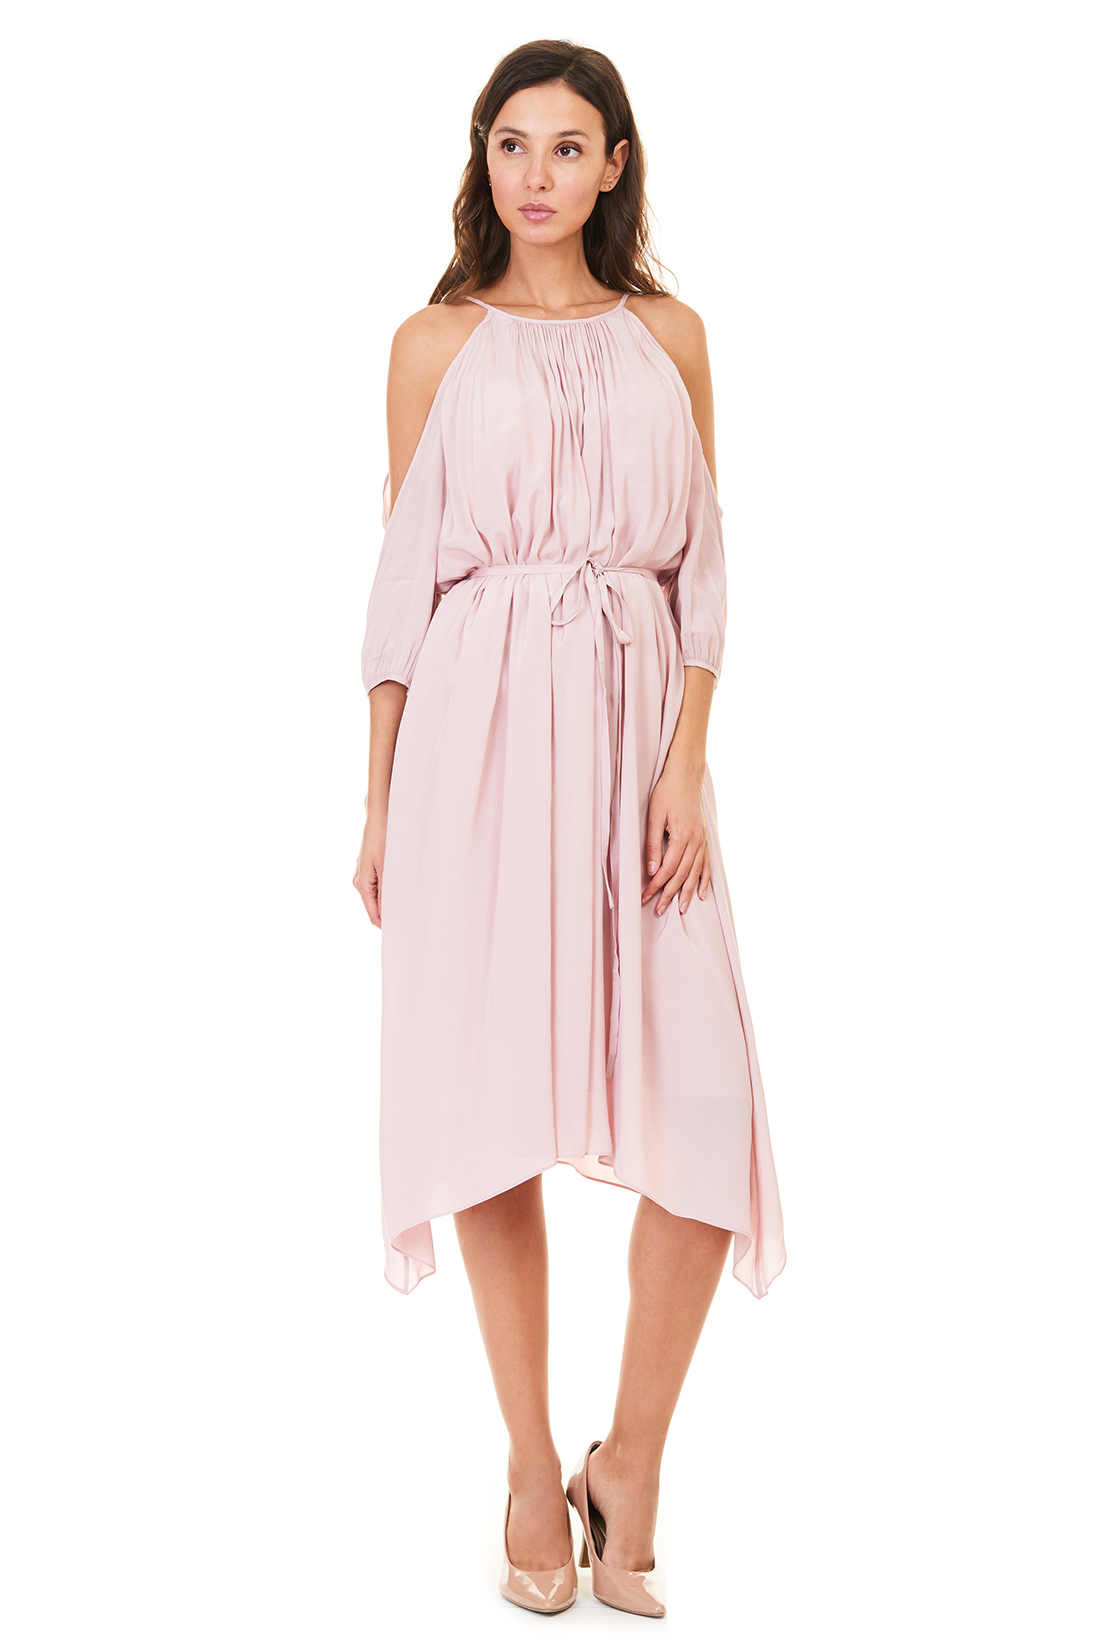 Платье-туника с открытыми плечами (арт. baon B457105), размер XL, цвет розовый Платье-туника с открытыми плечами (арт. baon B457105) - фото 1